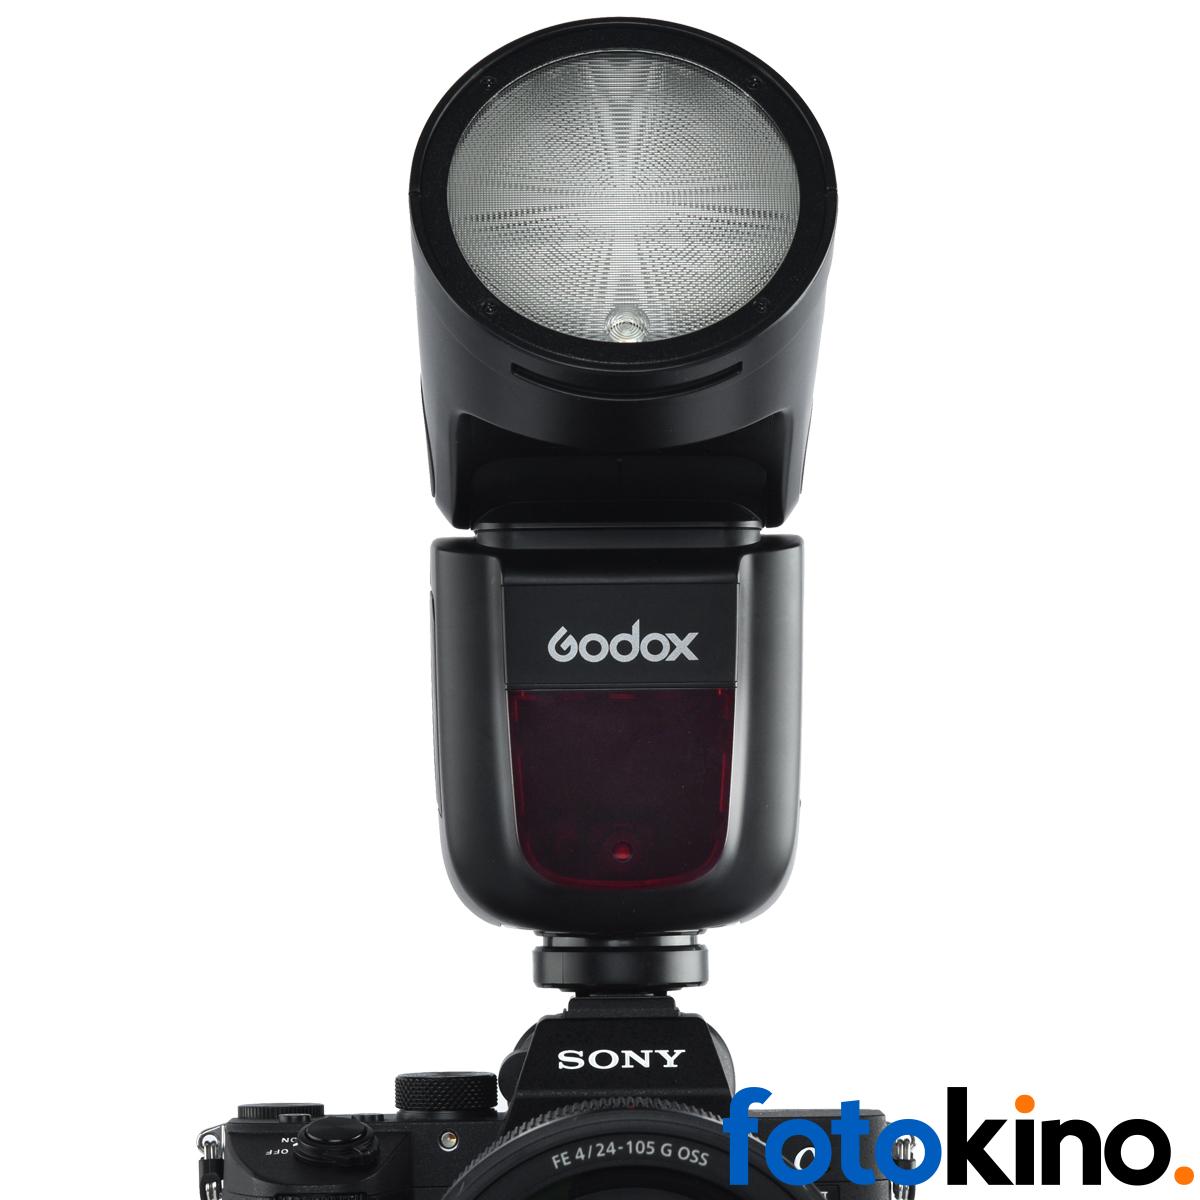 Kit flash godox V1 con accesorios fotografía y disparador Xpro.